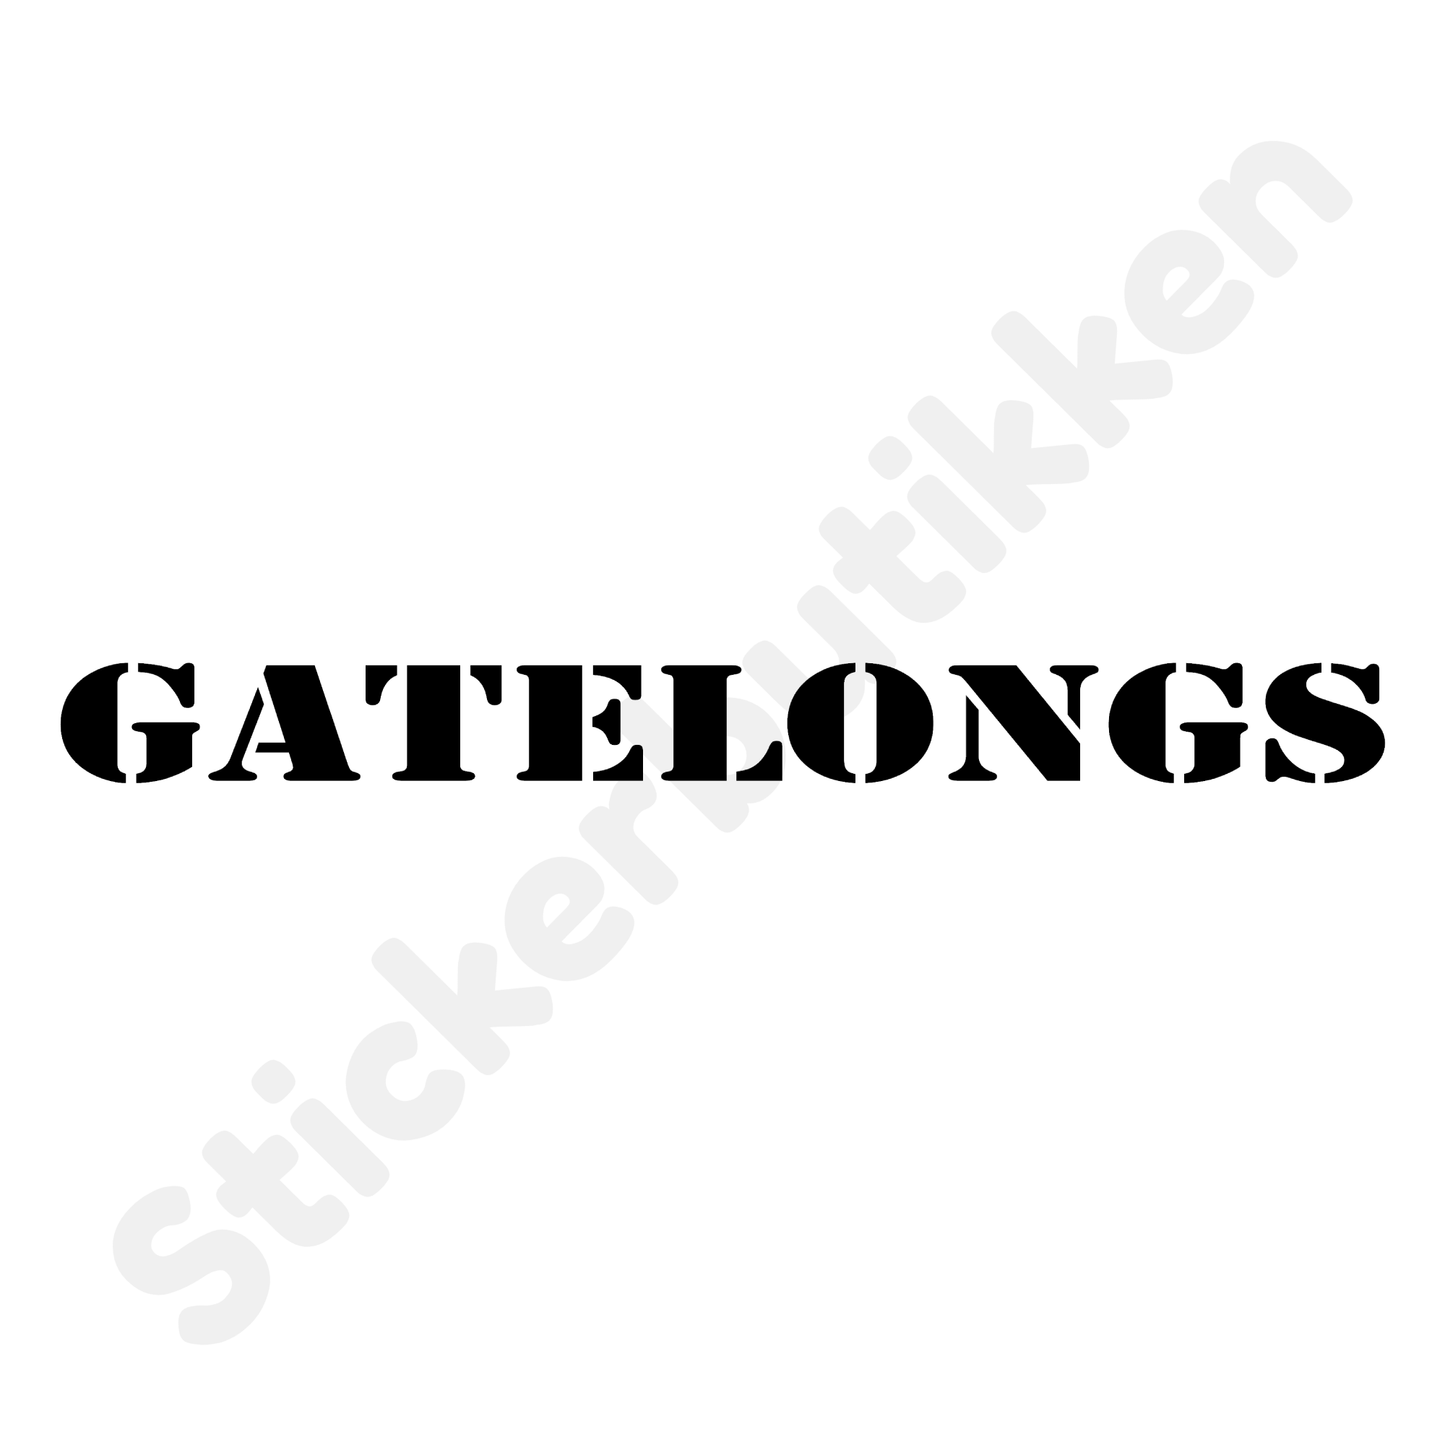 Gatelongs Streamer